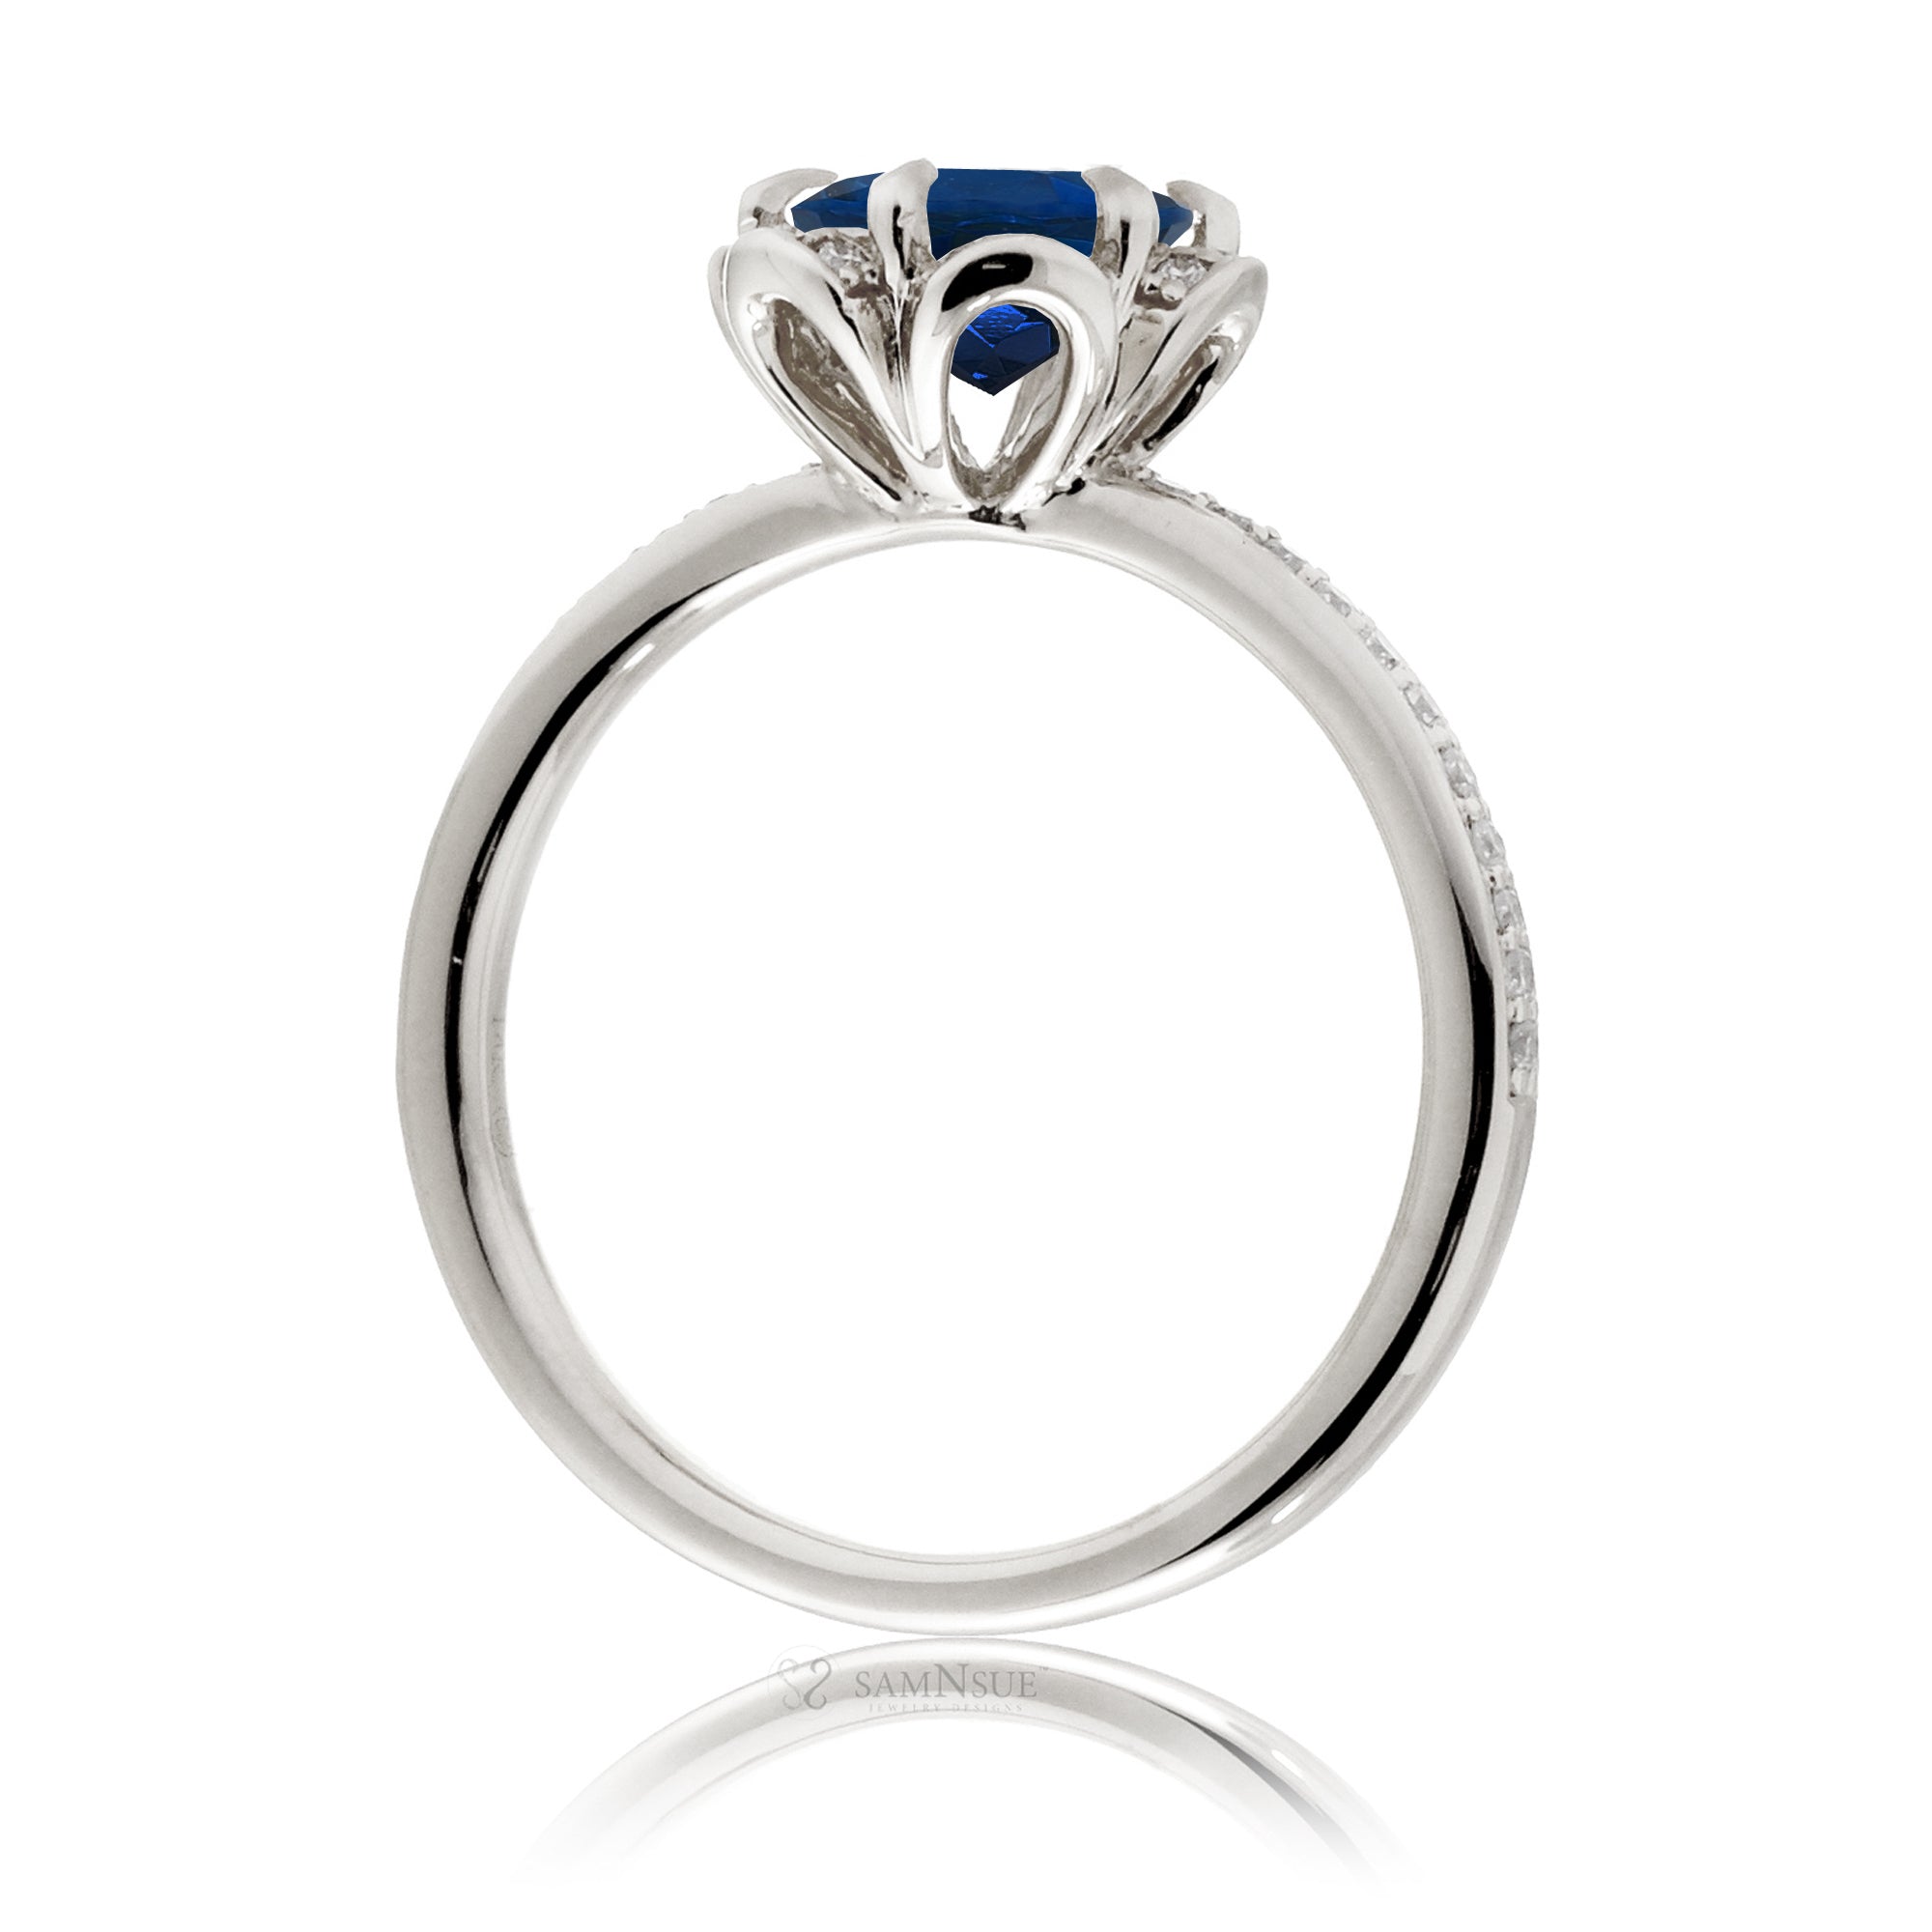 Sapphire ring diamond flower basket engagement ring white gold